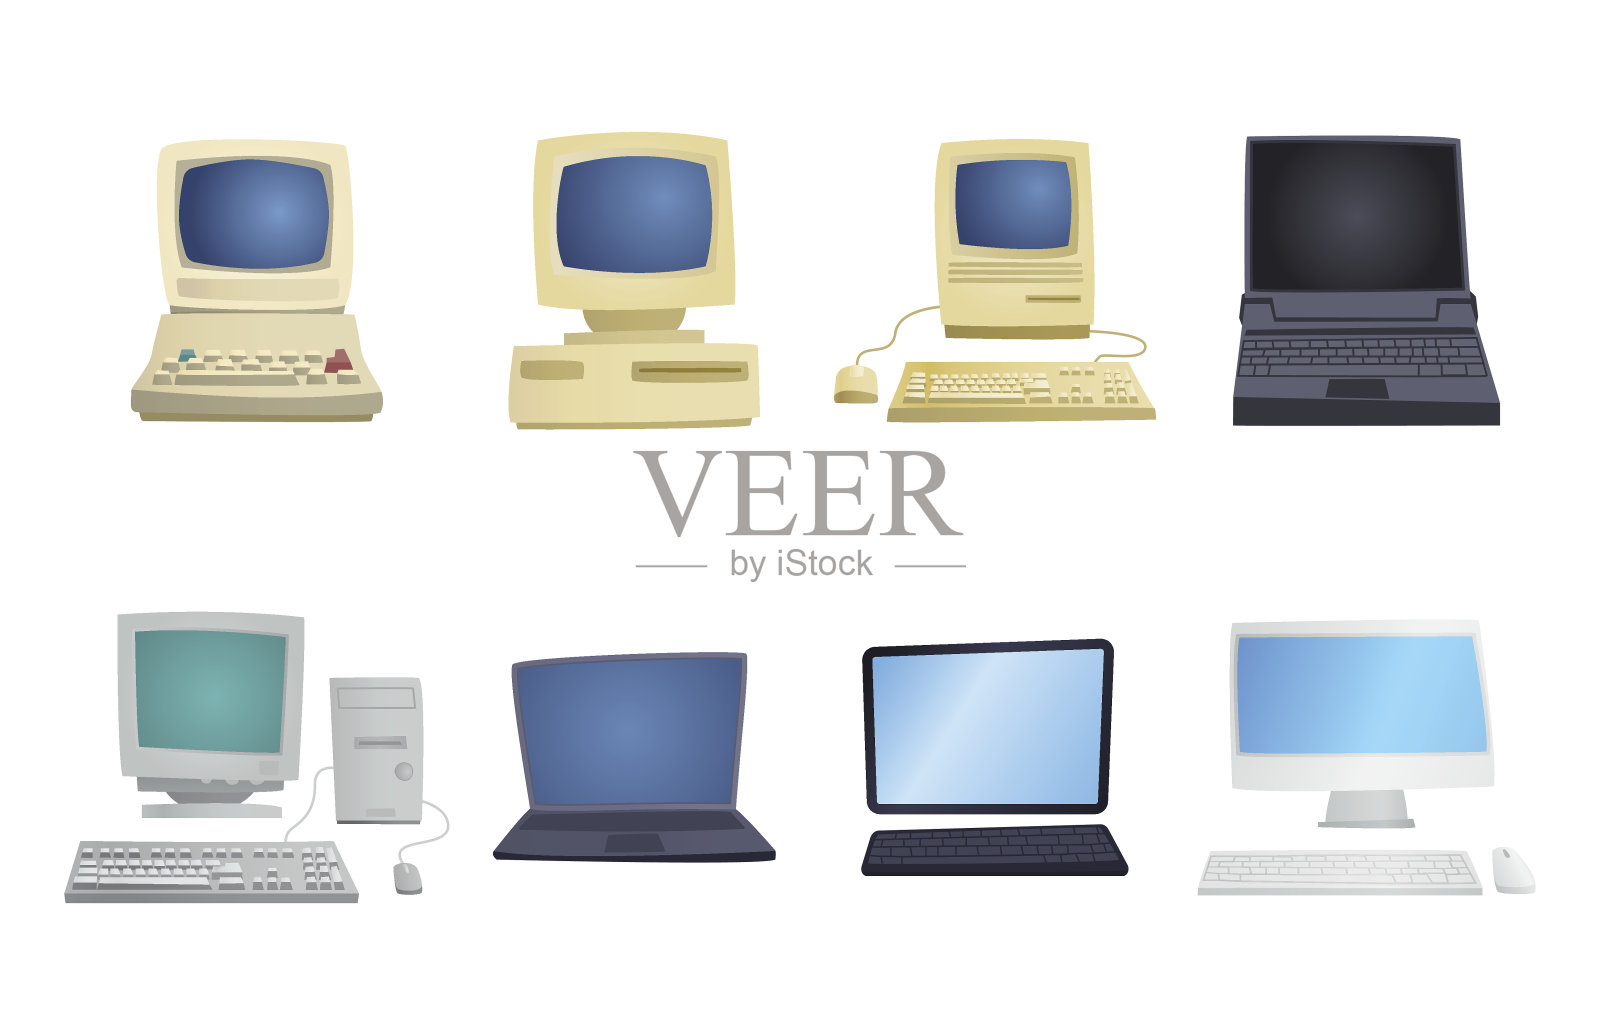 复古的电脑项目经典的古董技术风格的商业个人设备和复古的pc桌面硬件通信对象矢量插图设计元素图片